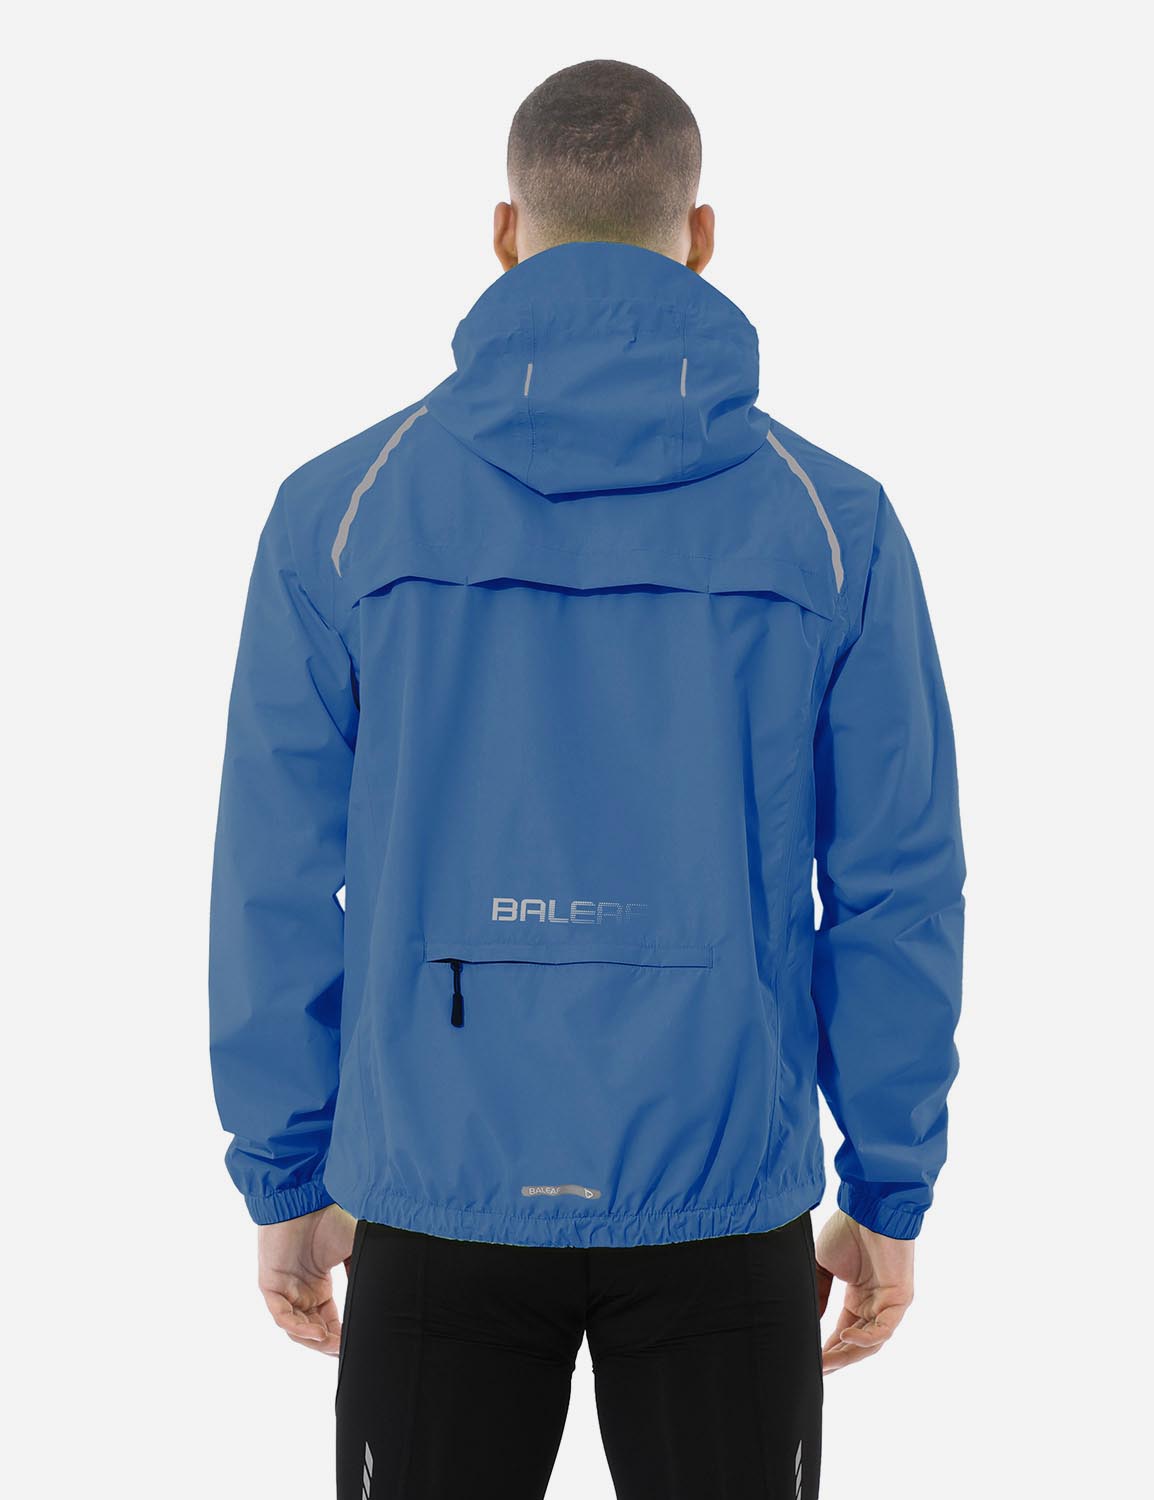 Baleaf Men's Fluorescent Waterproof Packable Windbreaker Track Jacket aaa467 Blue Back